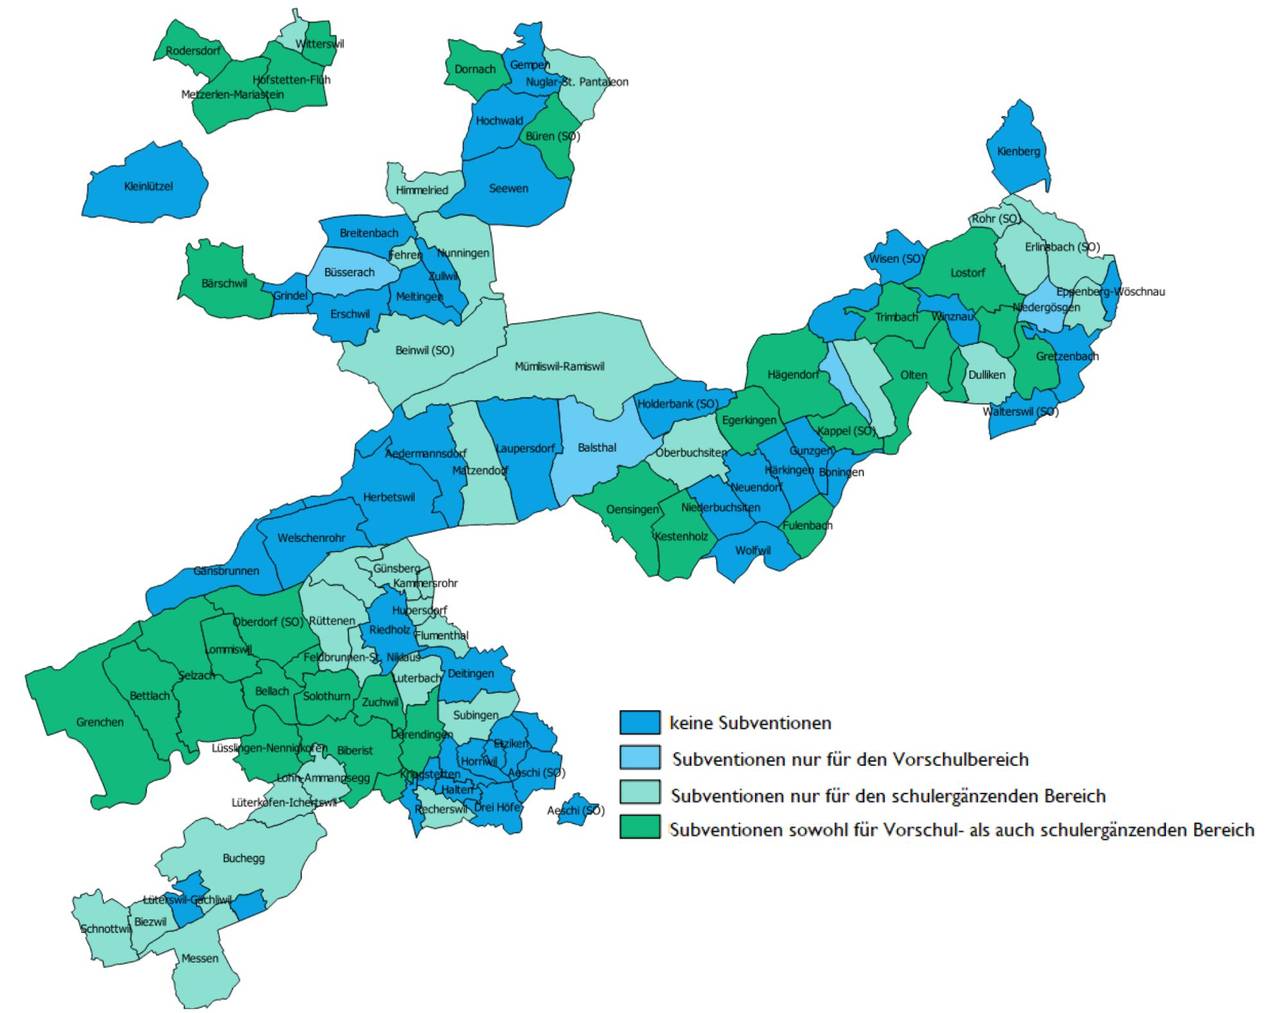 Kinderbetreuung Subventionszahlungen Kanton Solothurn nach Gemeinde (2019)